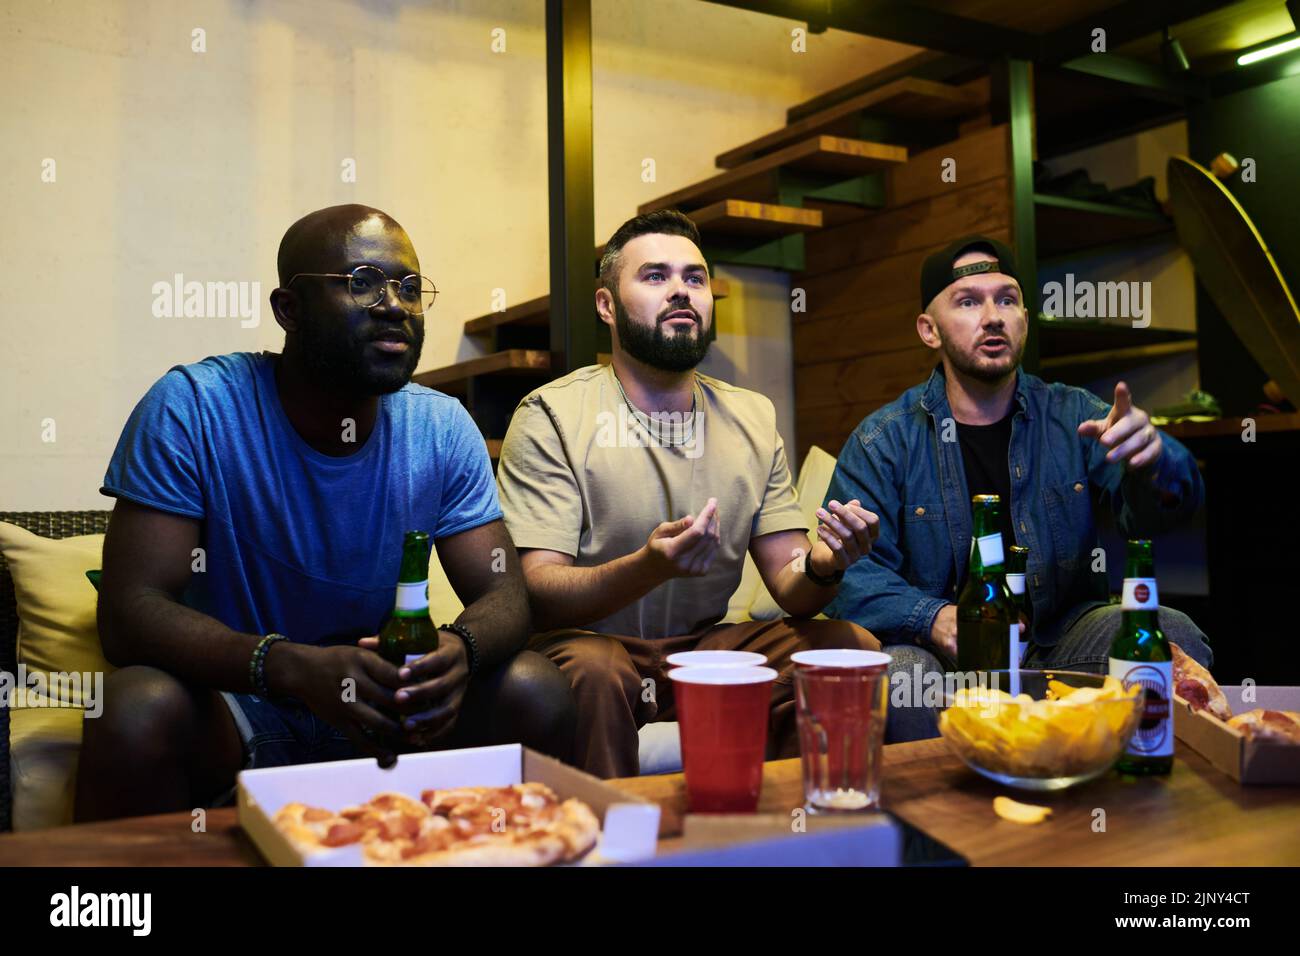 Grupo de jóvenes amigos interraciales viendo la emisión de un partido de fútbol en el garaje sentado frente a una mesa servida y un televisor Foto de stock